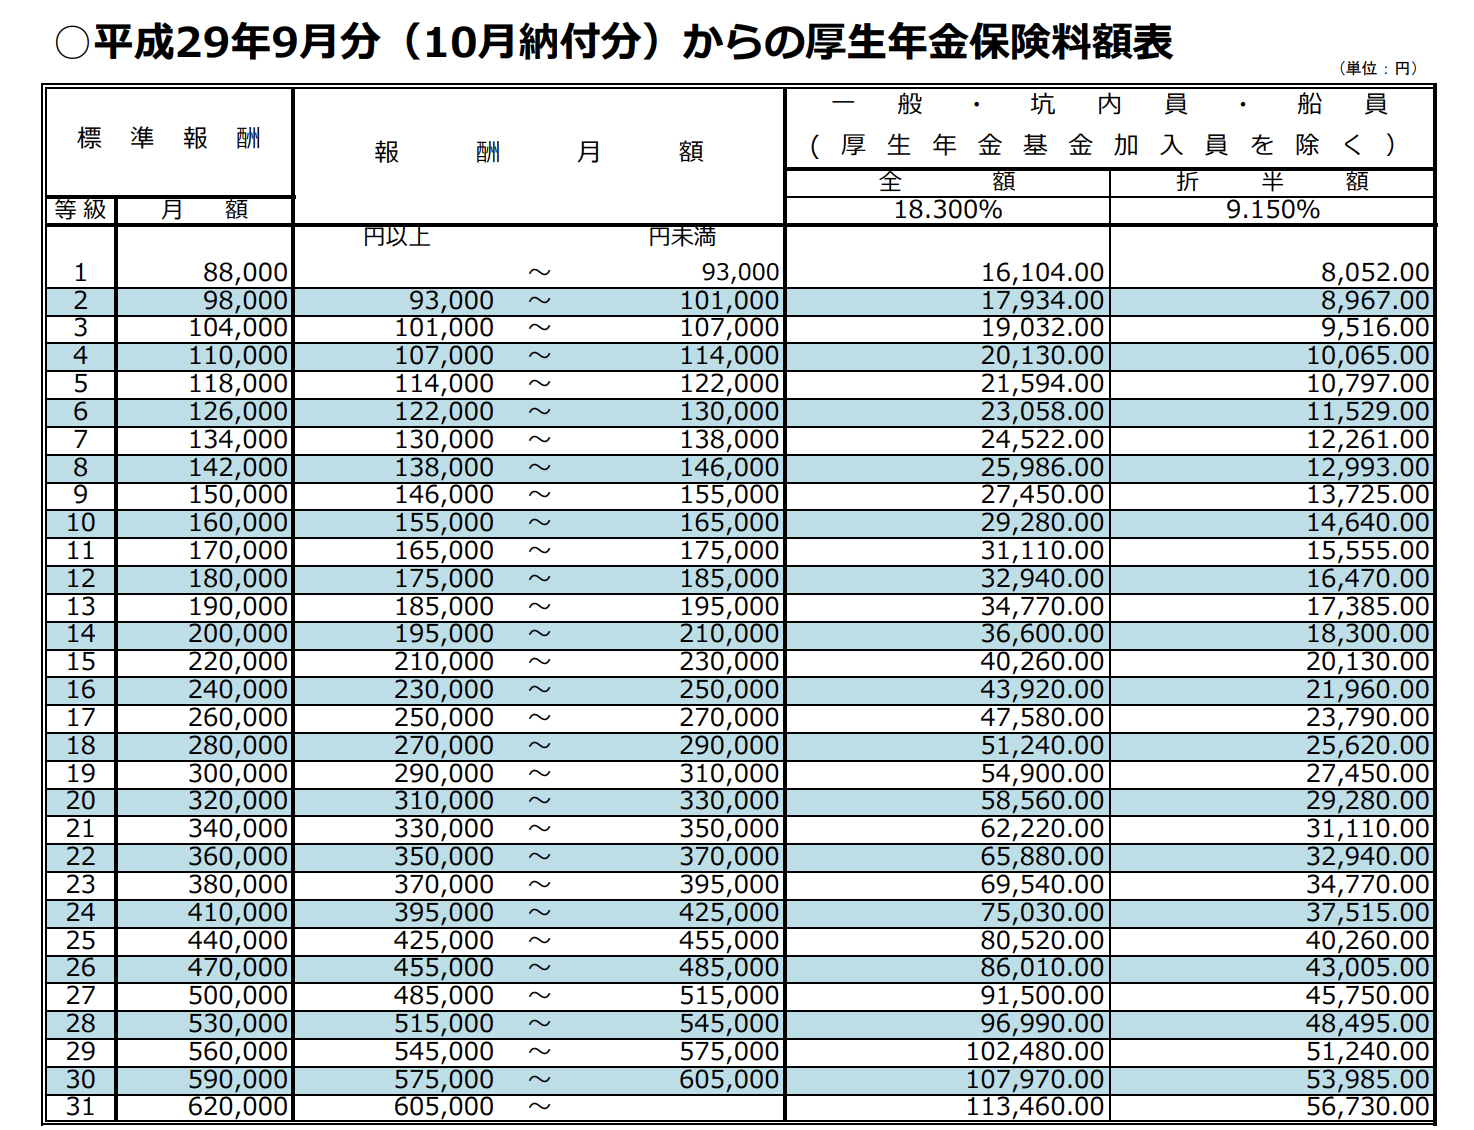 日本年金機構「保険料額表」